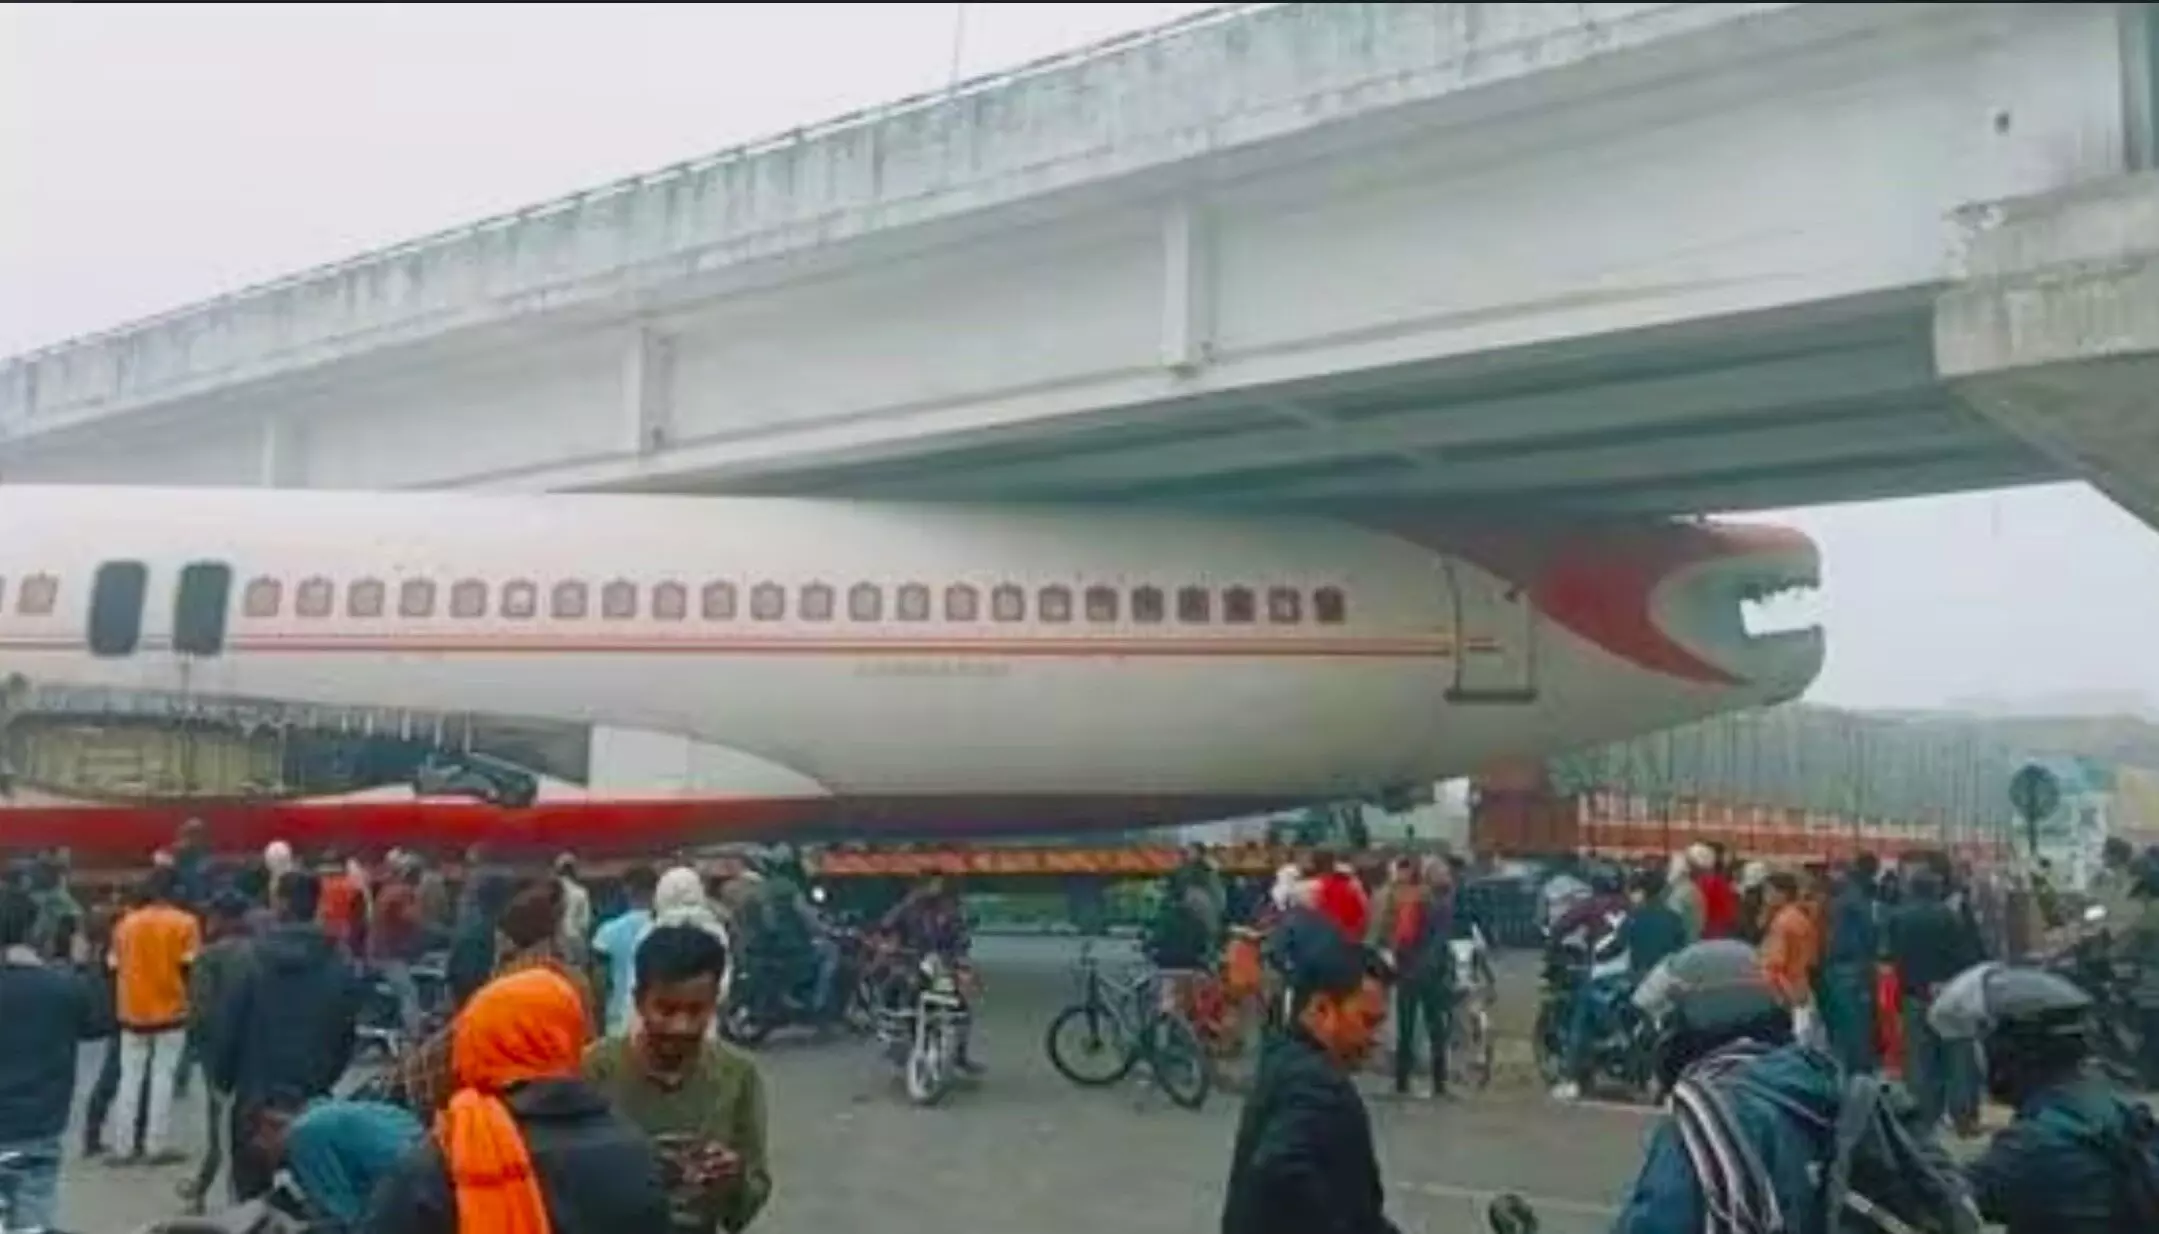 Motihari Plane Video: बिहार में पुल के नीचे फंसा हवाई जहाज, नजारा देखने के लिए लोगों की उमड़ी भीड़